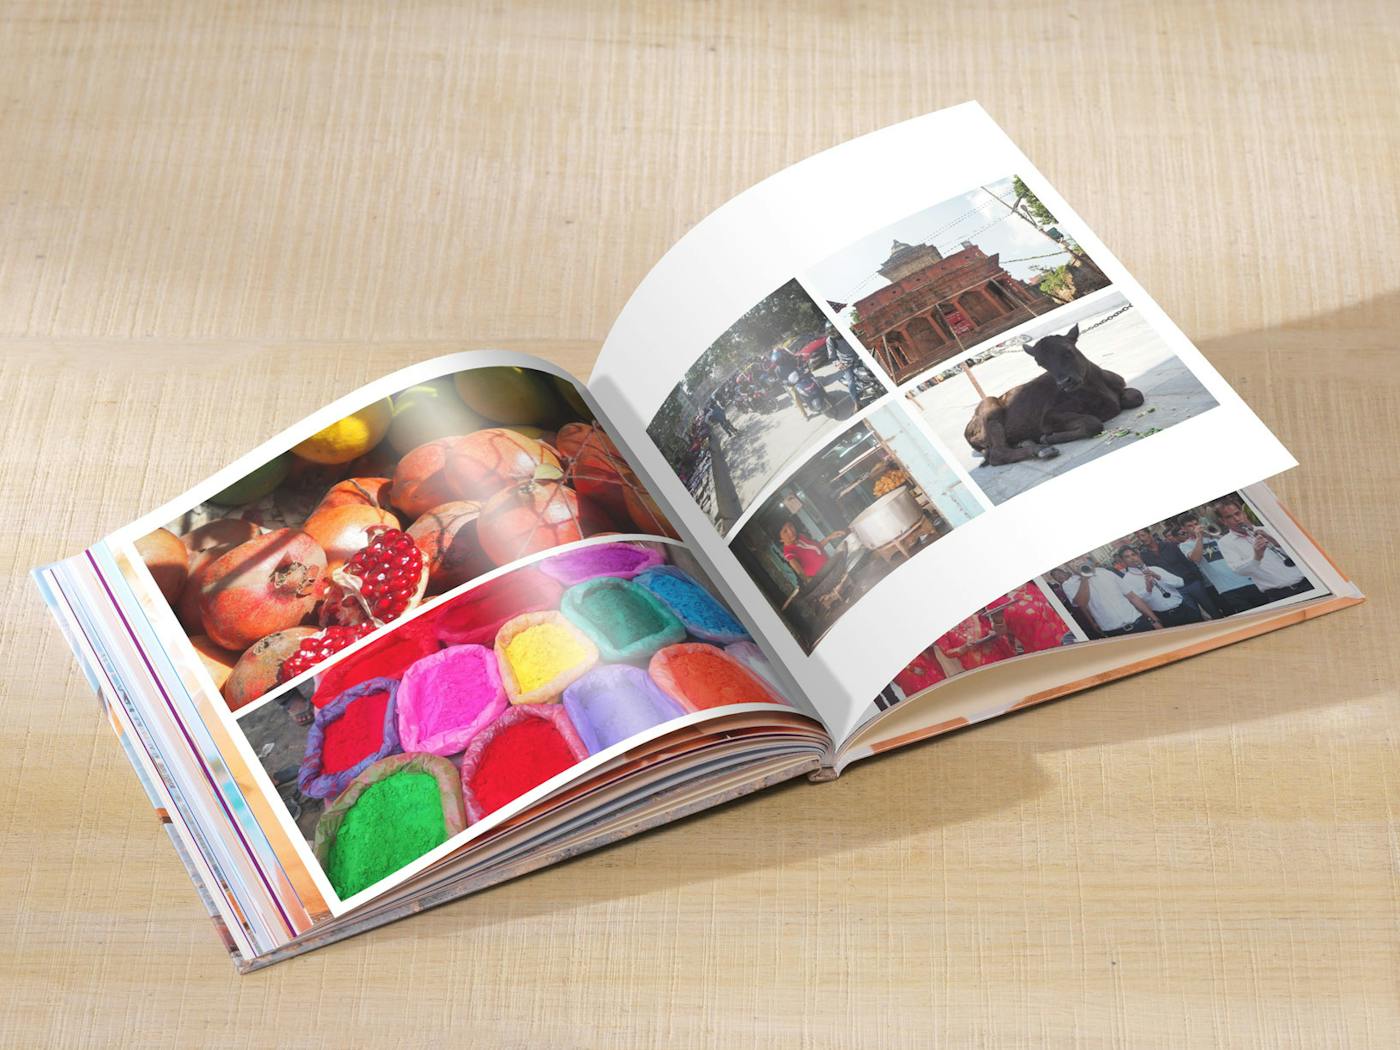 Fotobuch per Software anlegen & gemeinsam bearbeiten